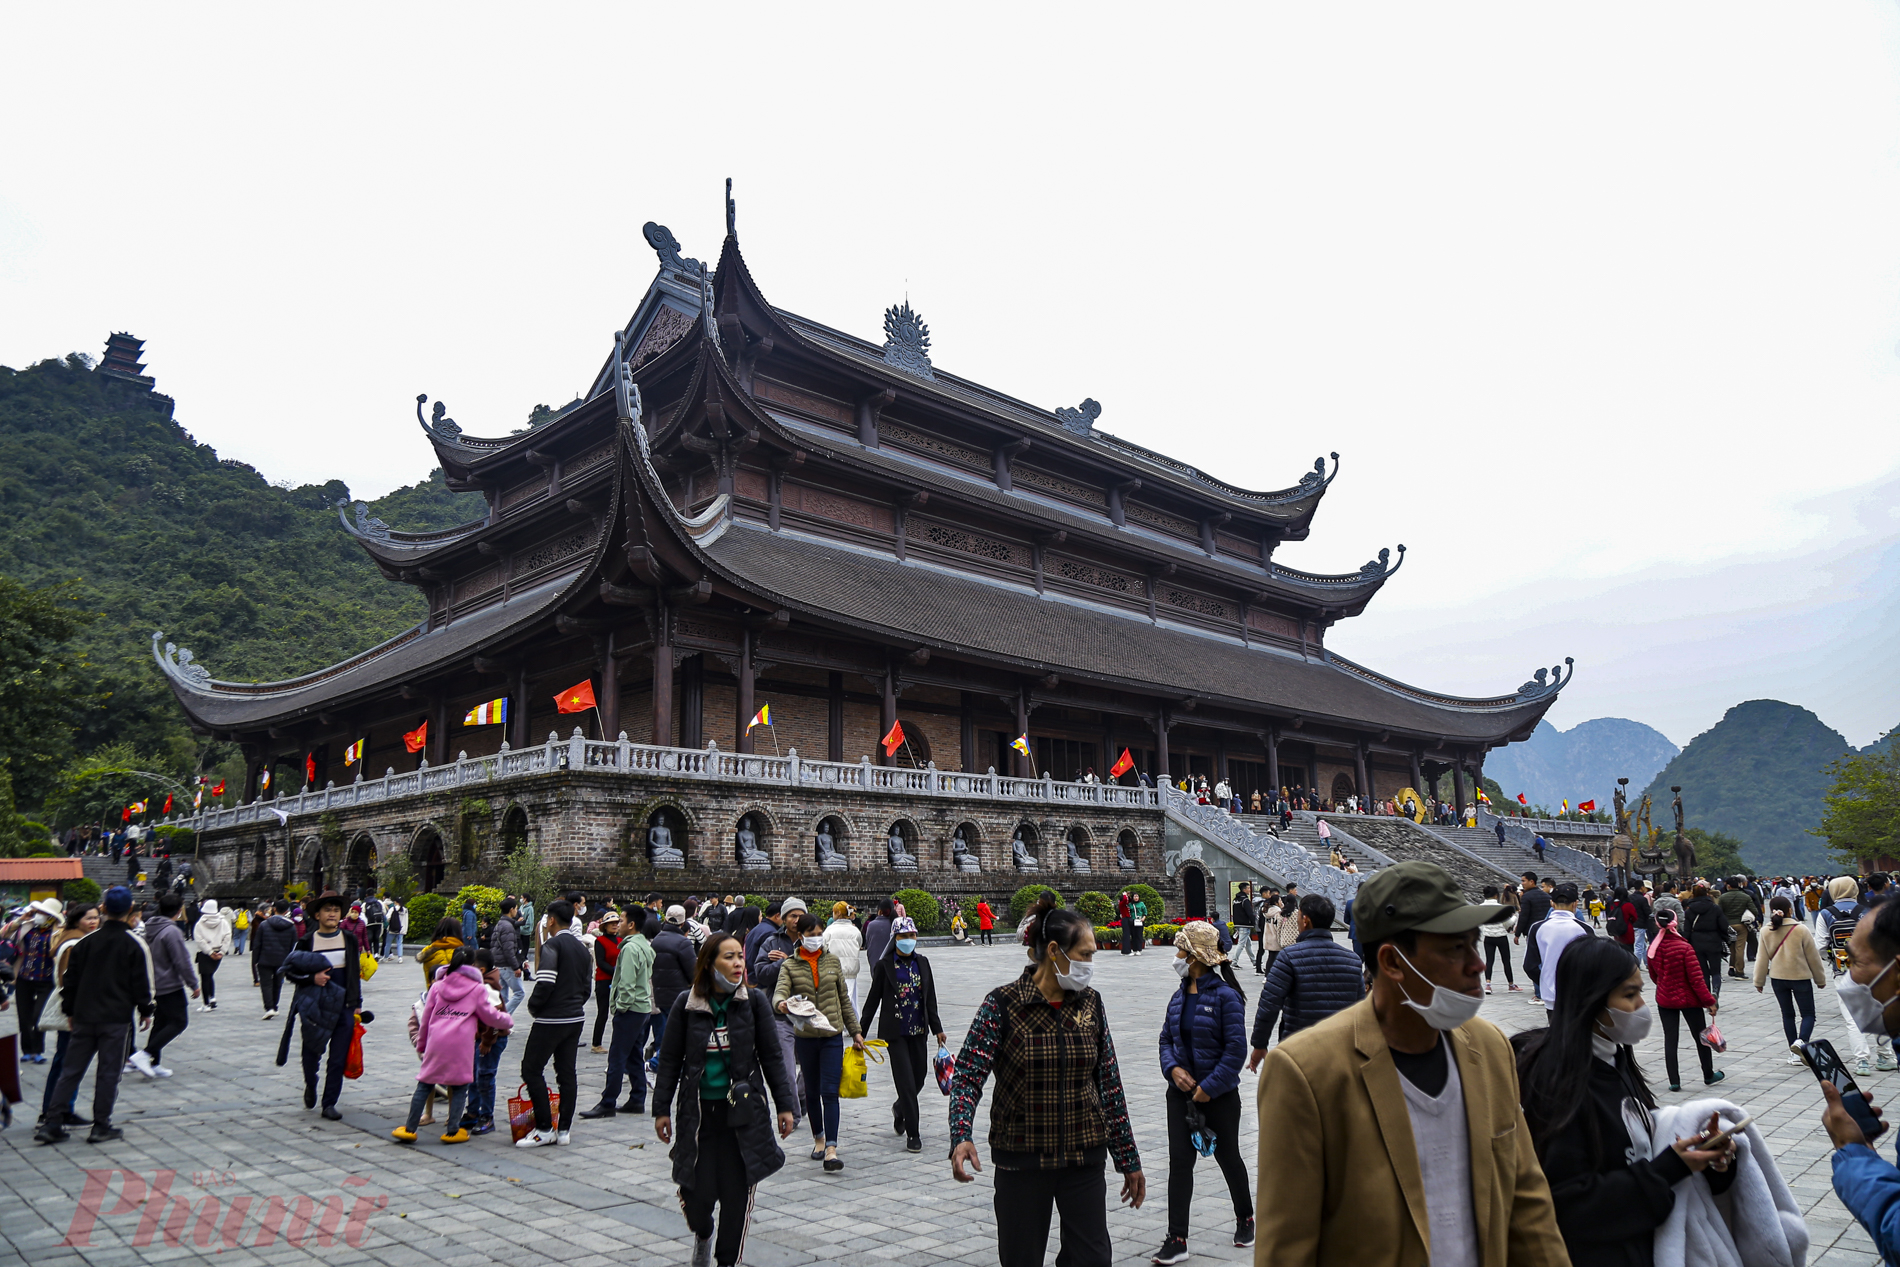 Theo ghi nhận của phóng viên, ngày 5/2 (tức mồng Năm Tết), hàng nghìn du khách từ khắp nơi đã đổ về khu du lịch chùa Tam Chúc, huyện Kim Bảng, tỉnh Hà Nam, để chiêm bái, tham quan, du lịch...